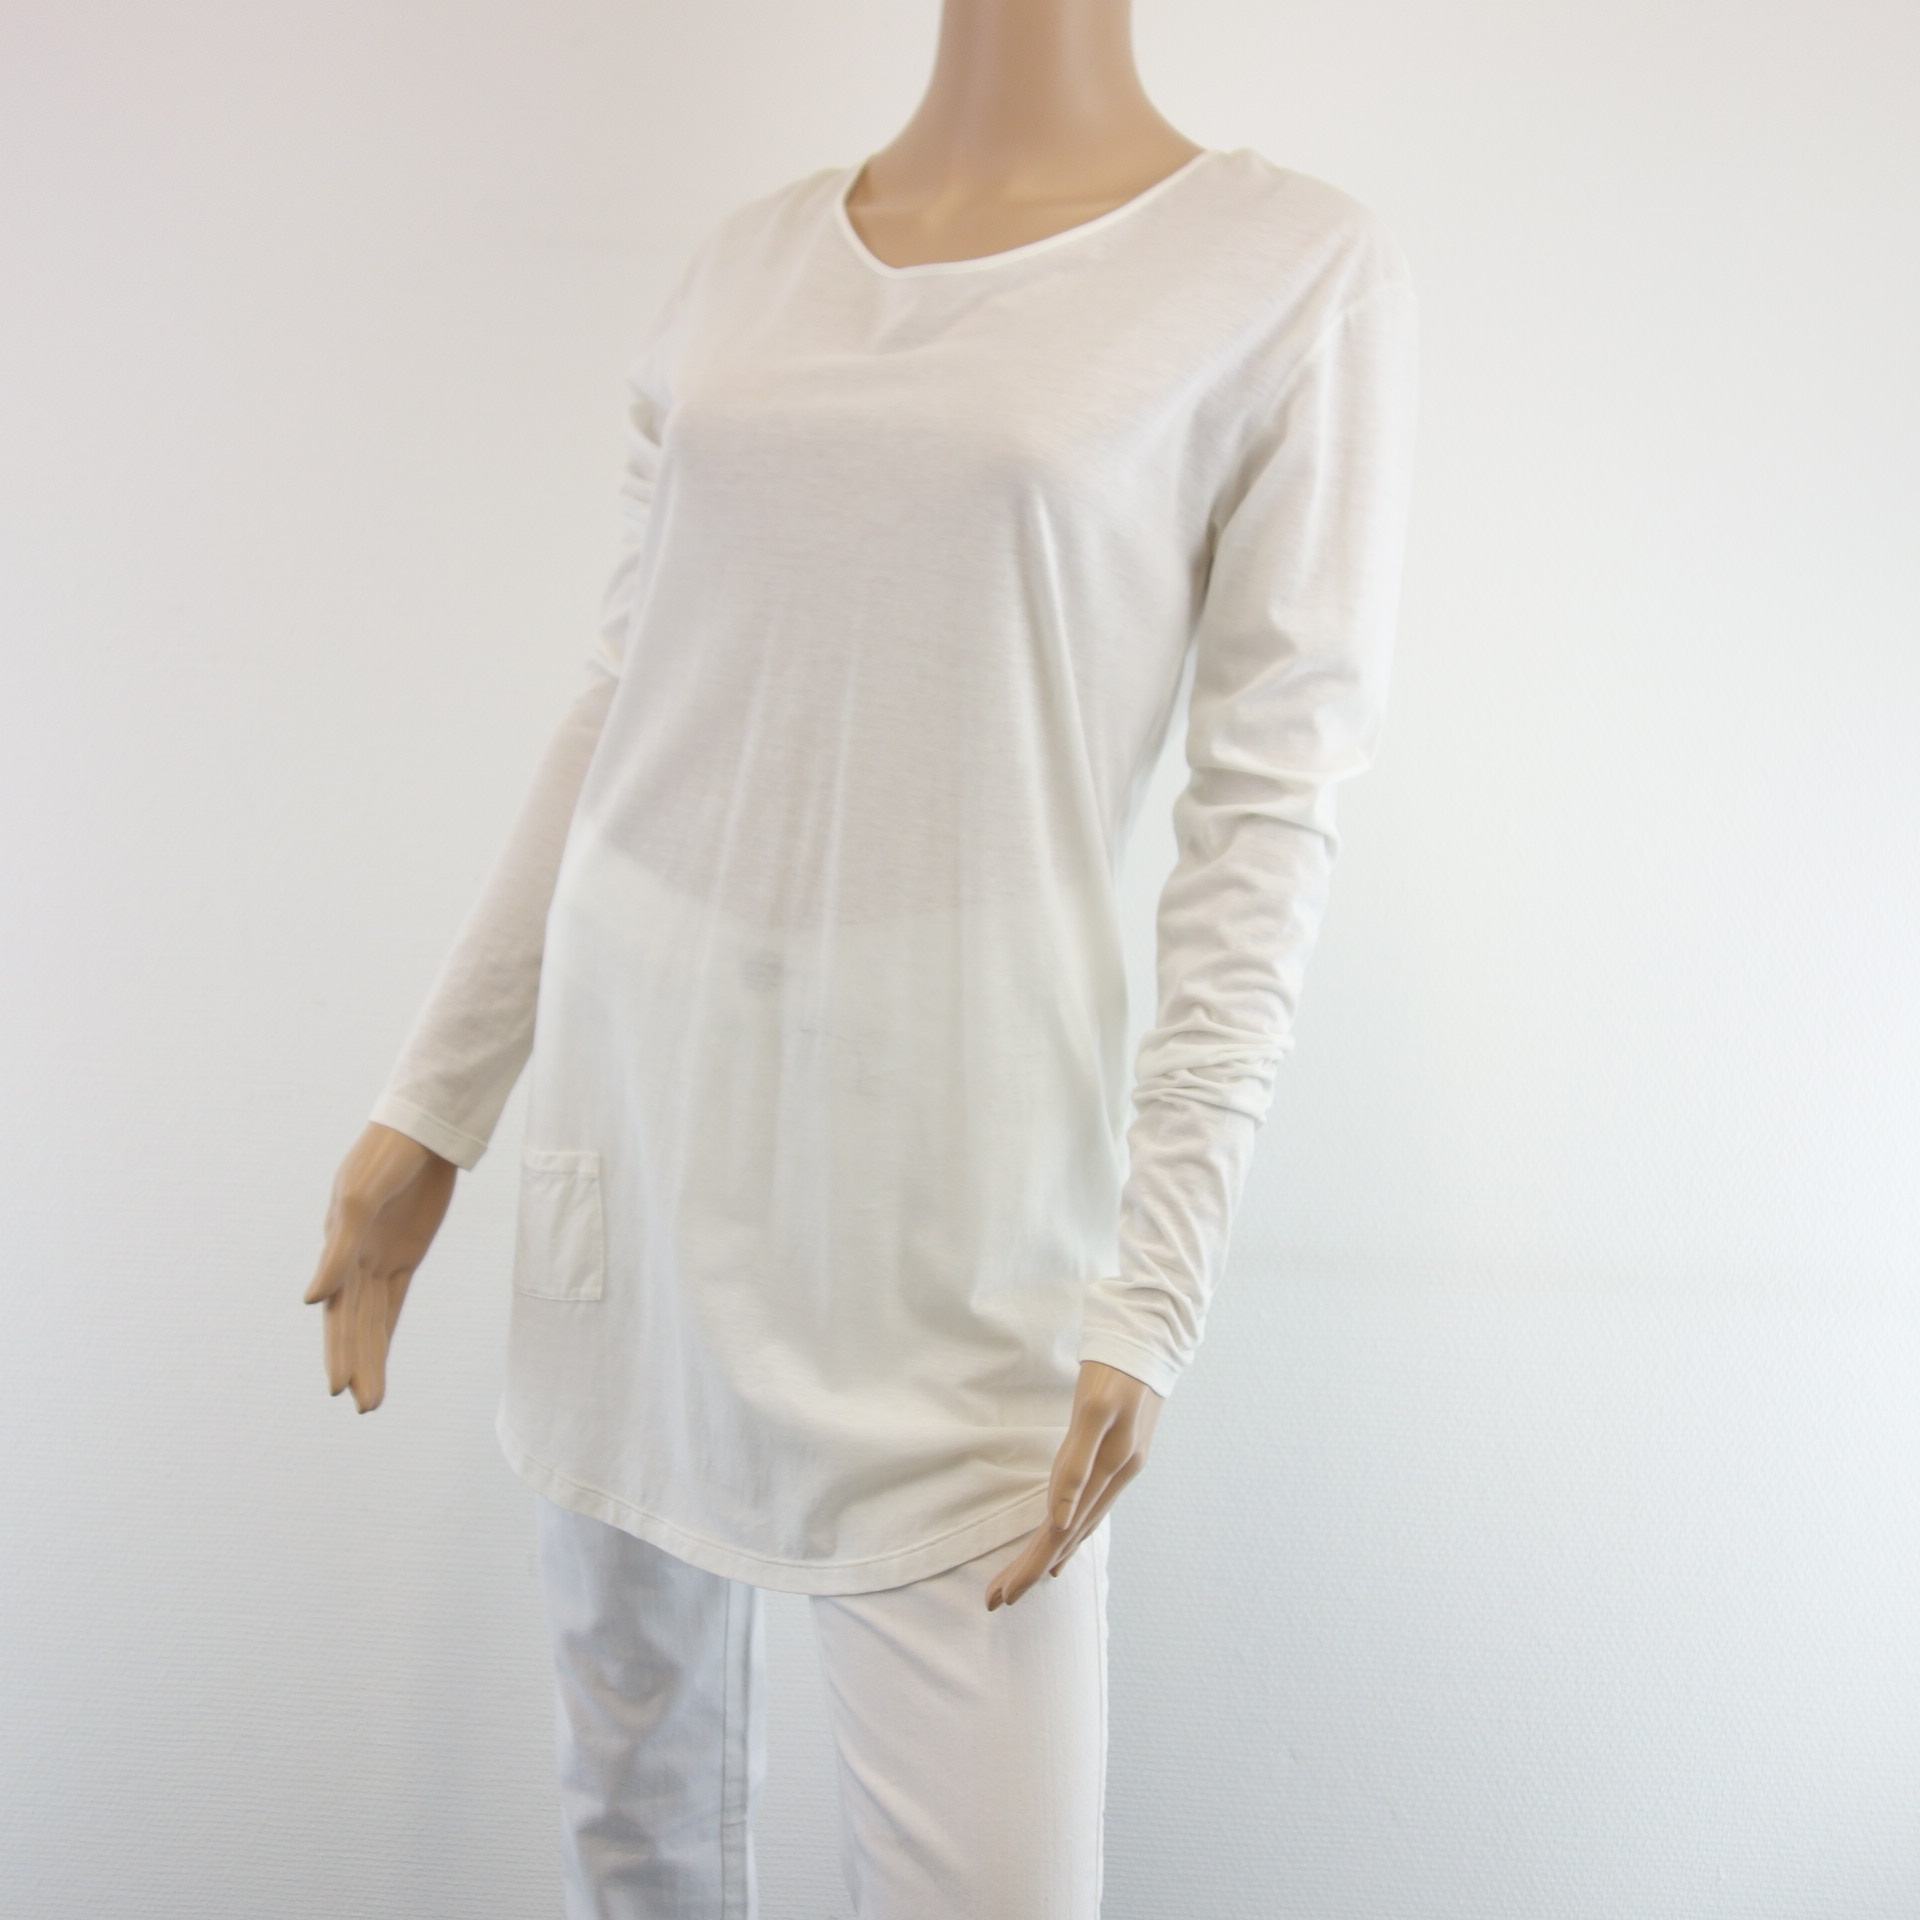 HUMANOID Ateliers Shirt Weiß Longsleeve 100% Baumwolle Rückenfrei